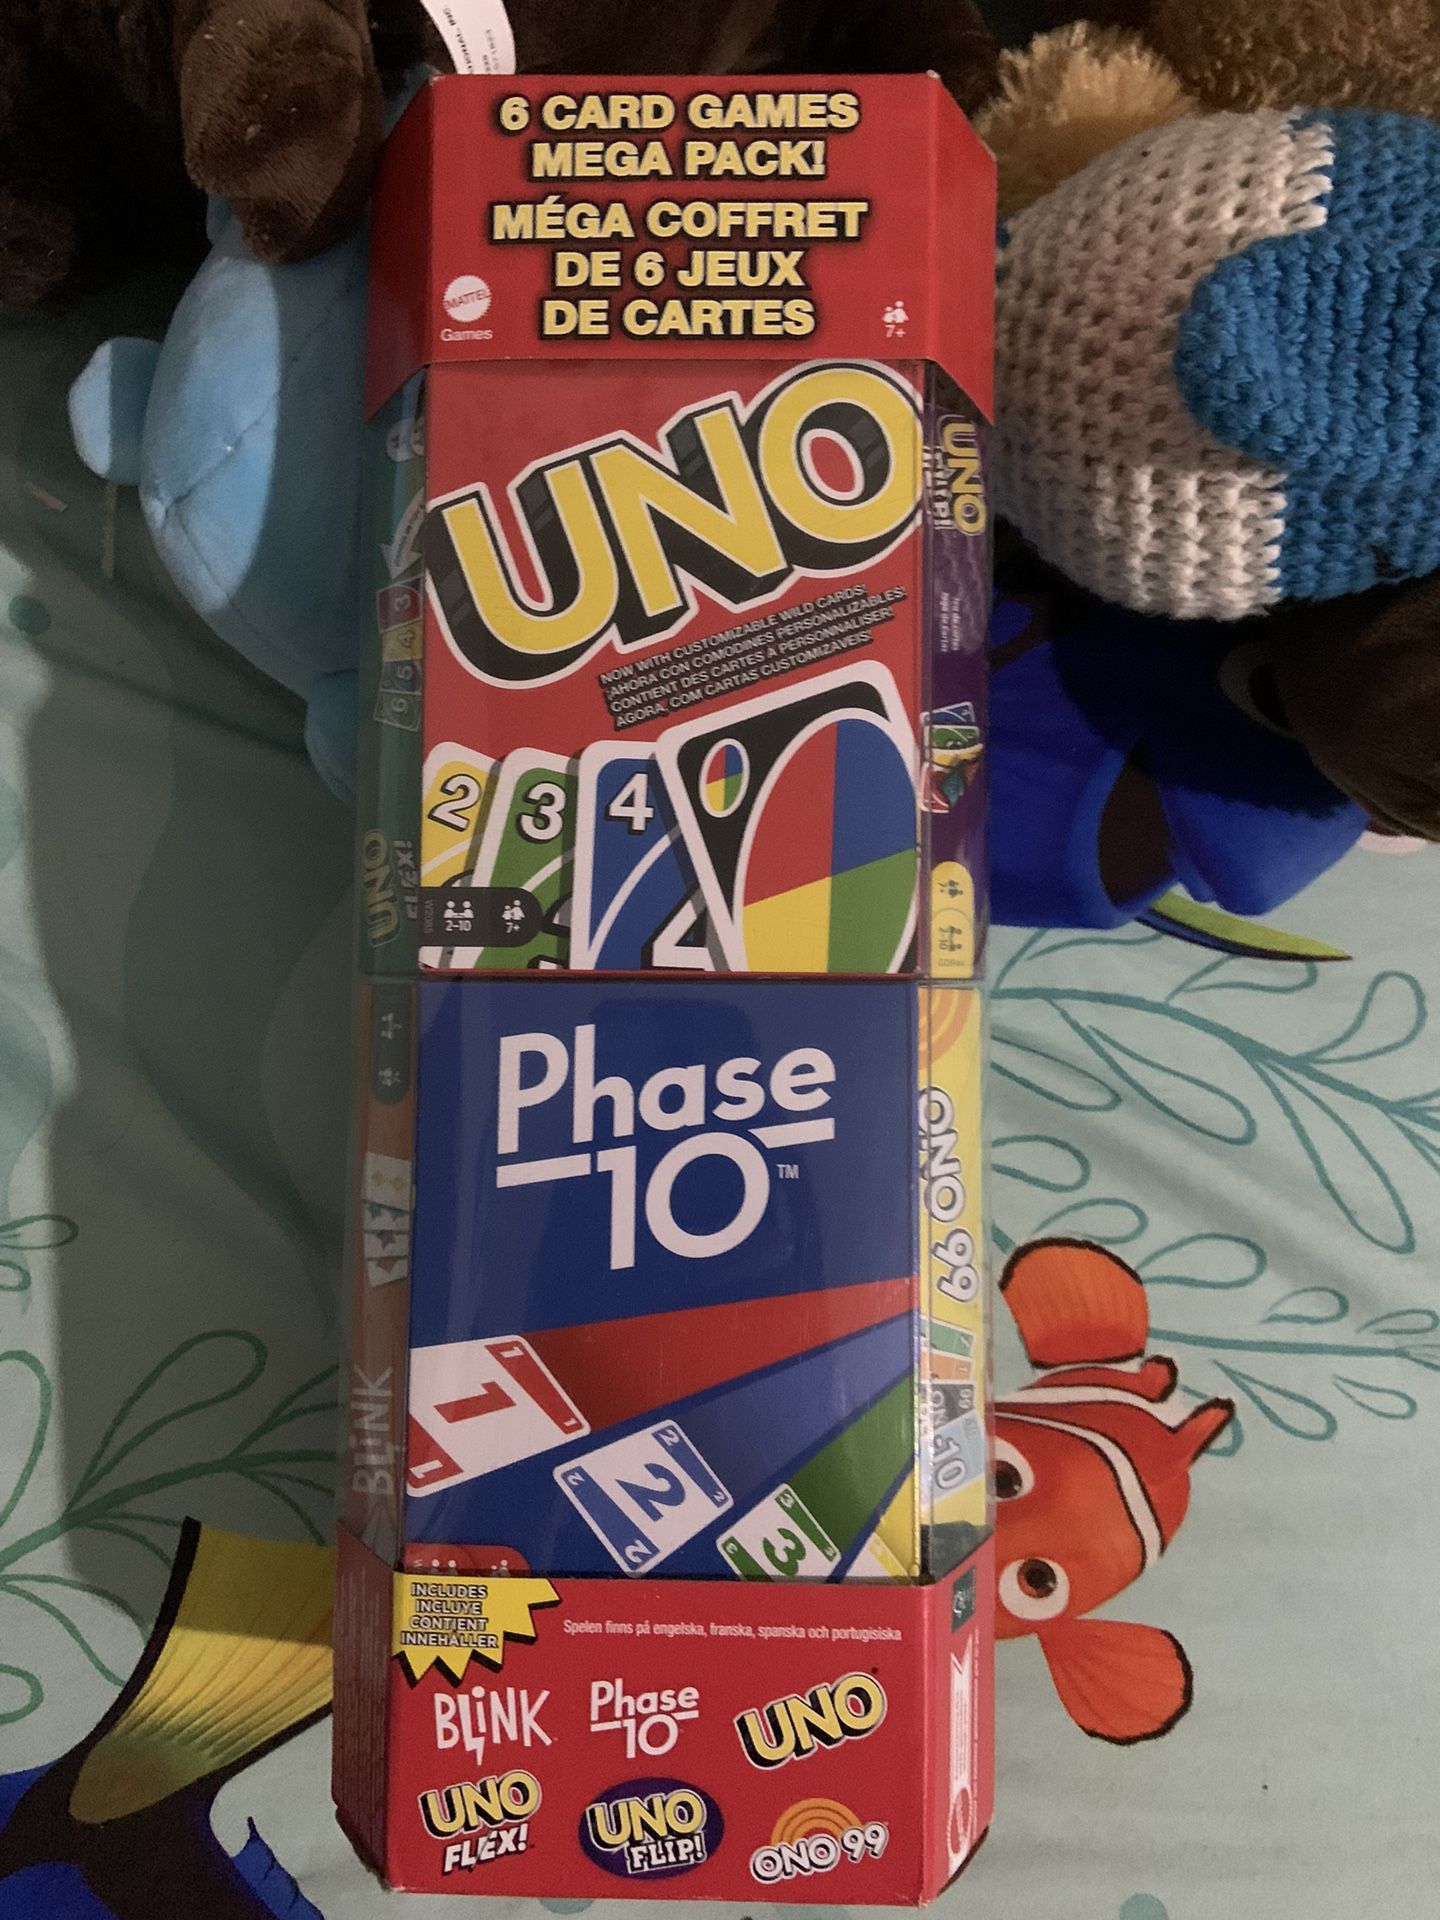 UNO 6 Card Games